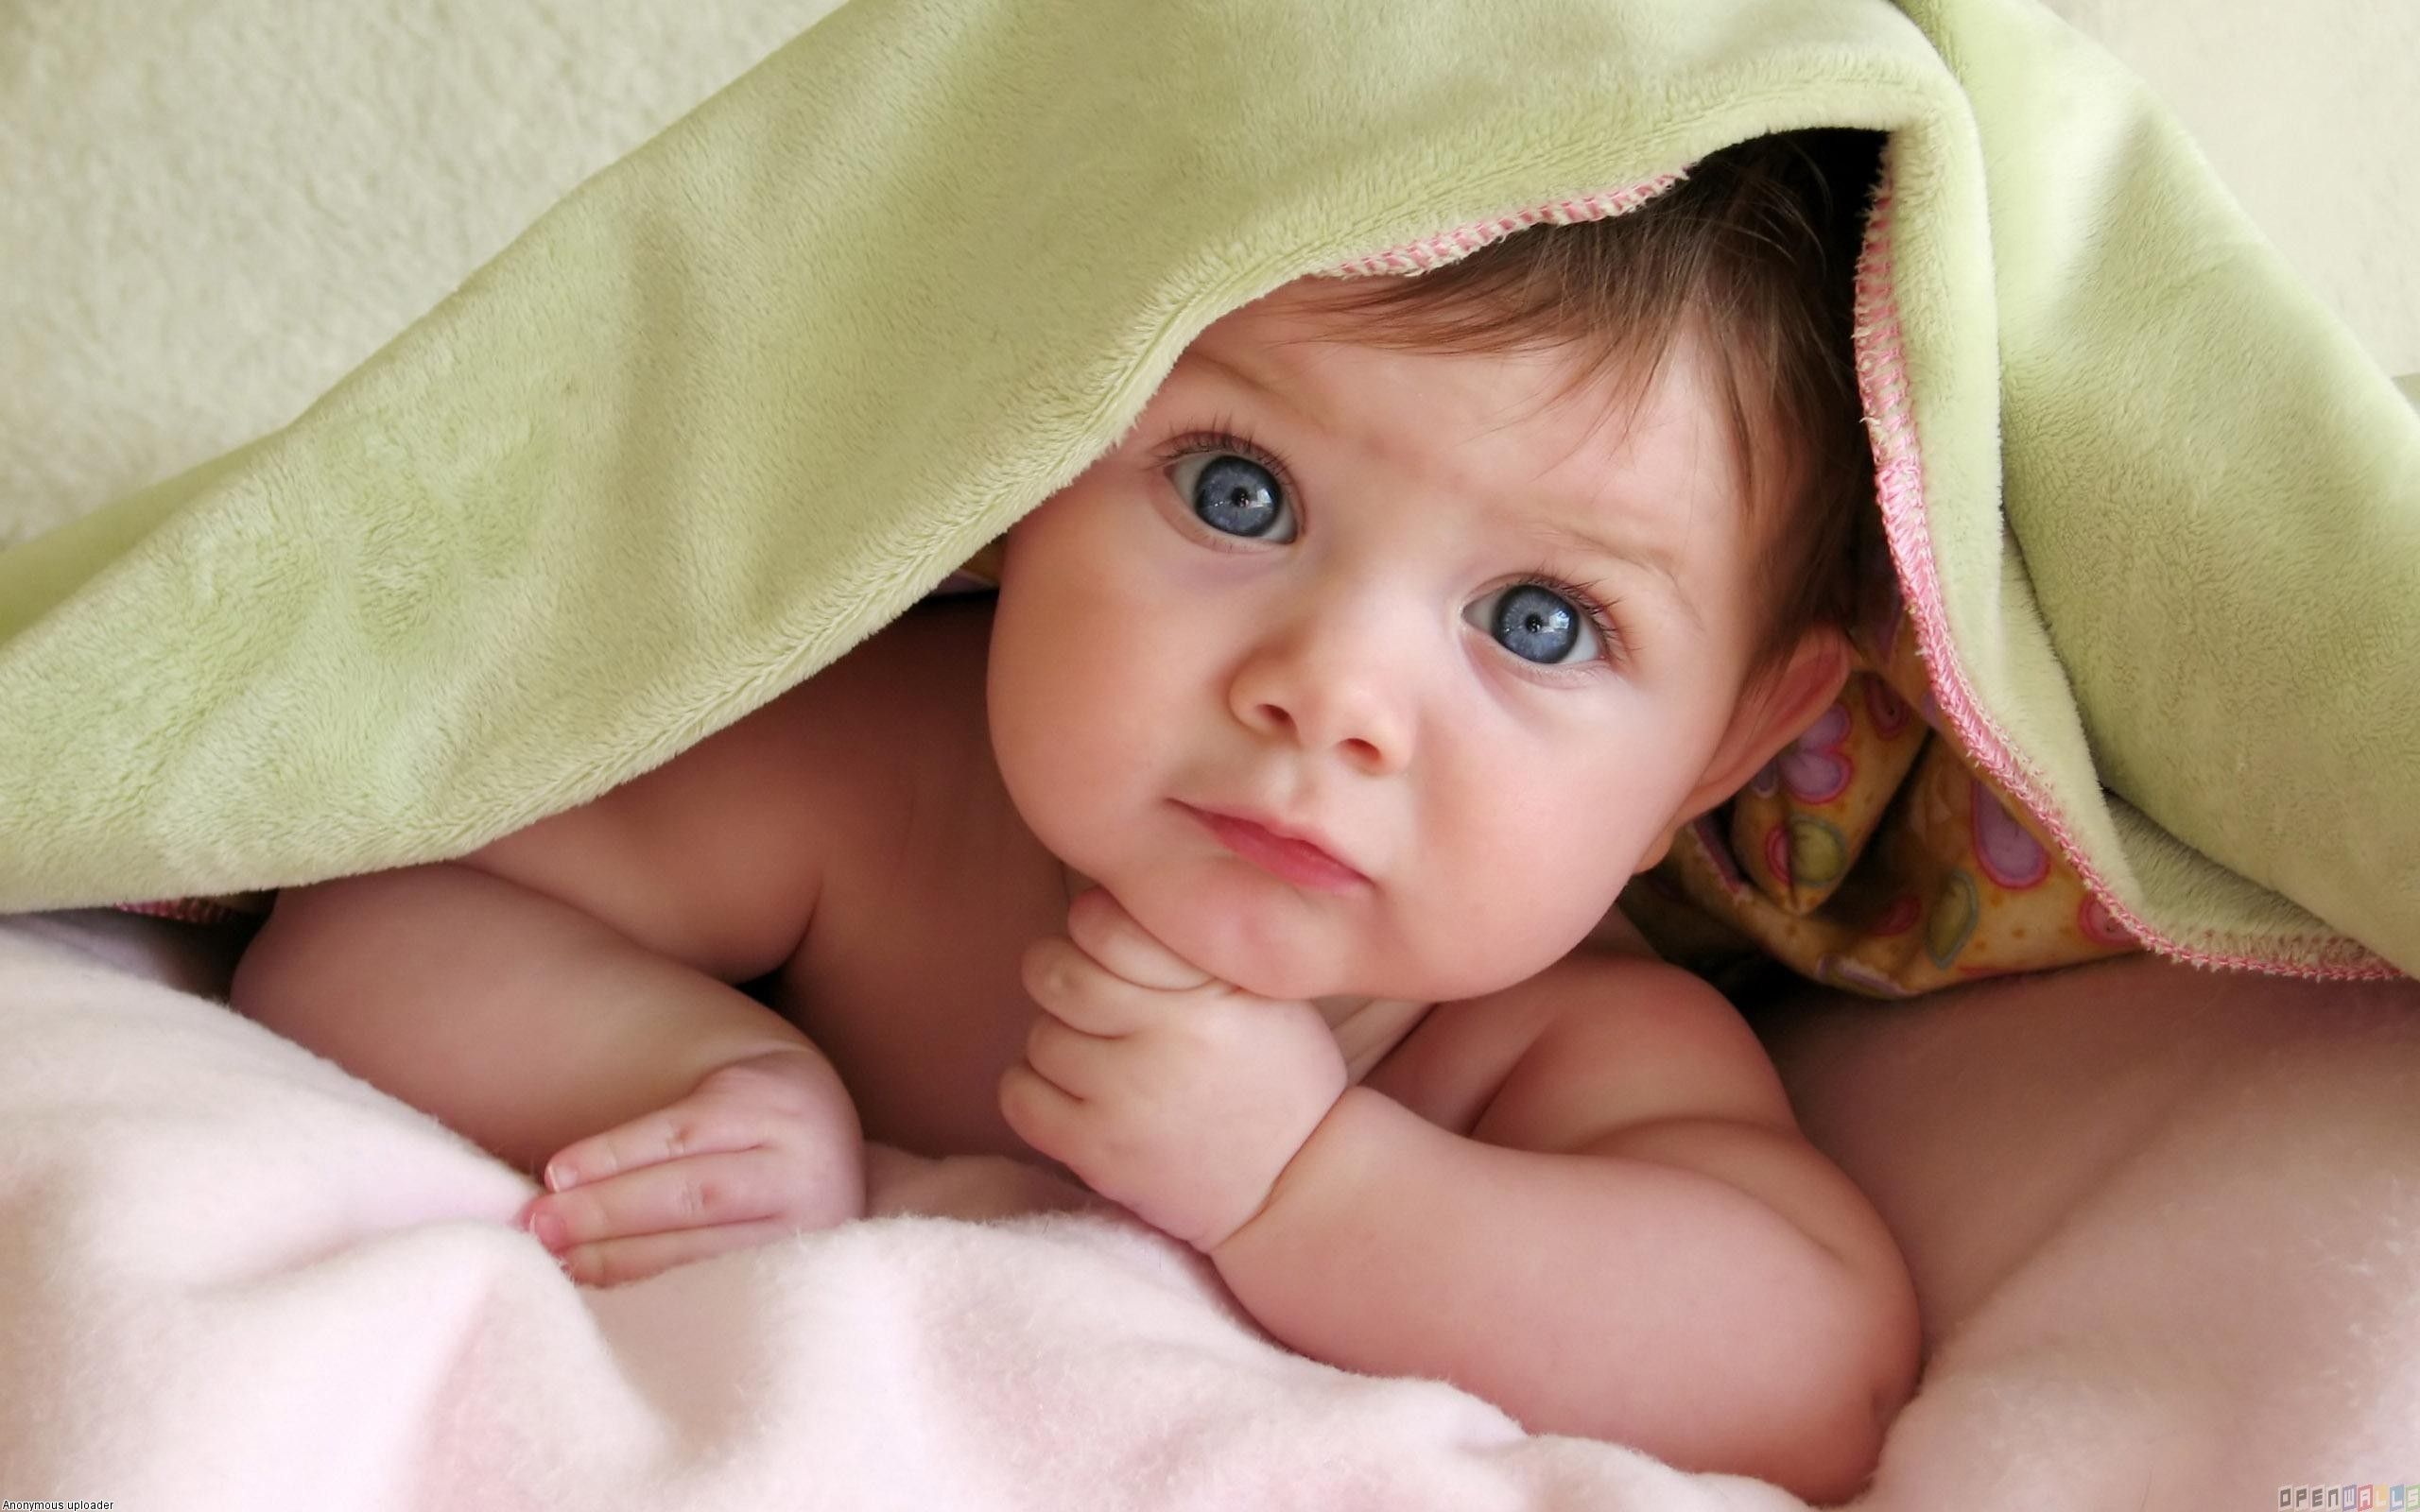 Beautiful Cute Baby Boy & Girls HD Wallpapers, Photos Free